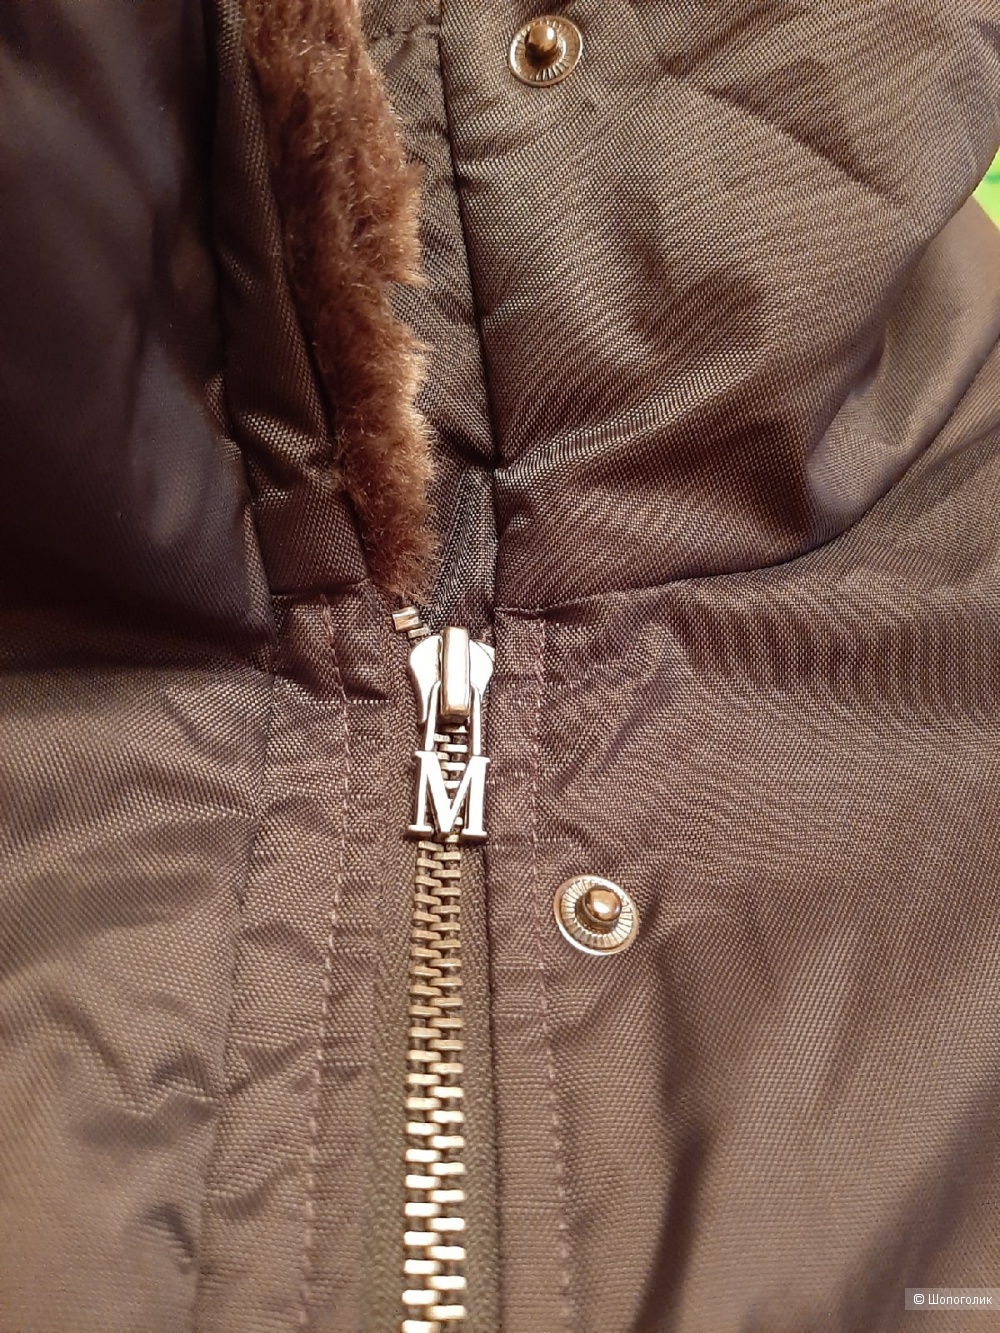 Куртка Madeleine размер 46